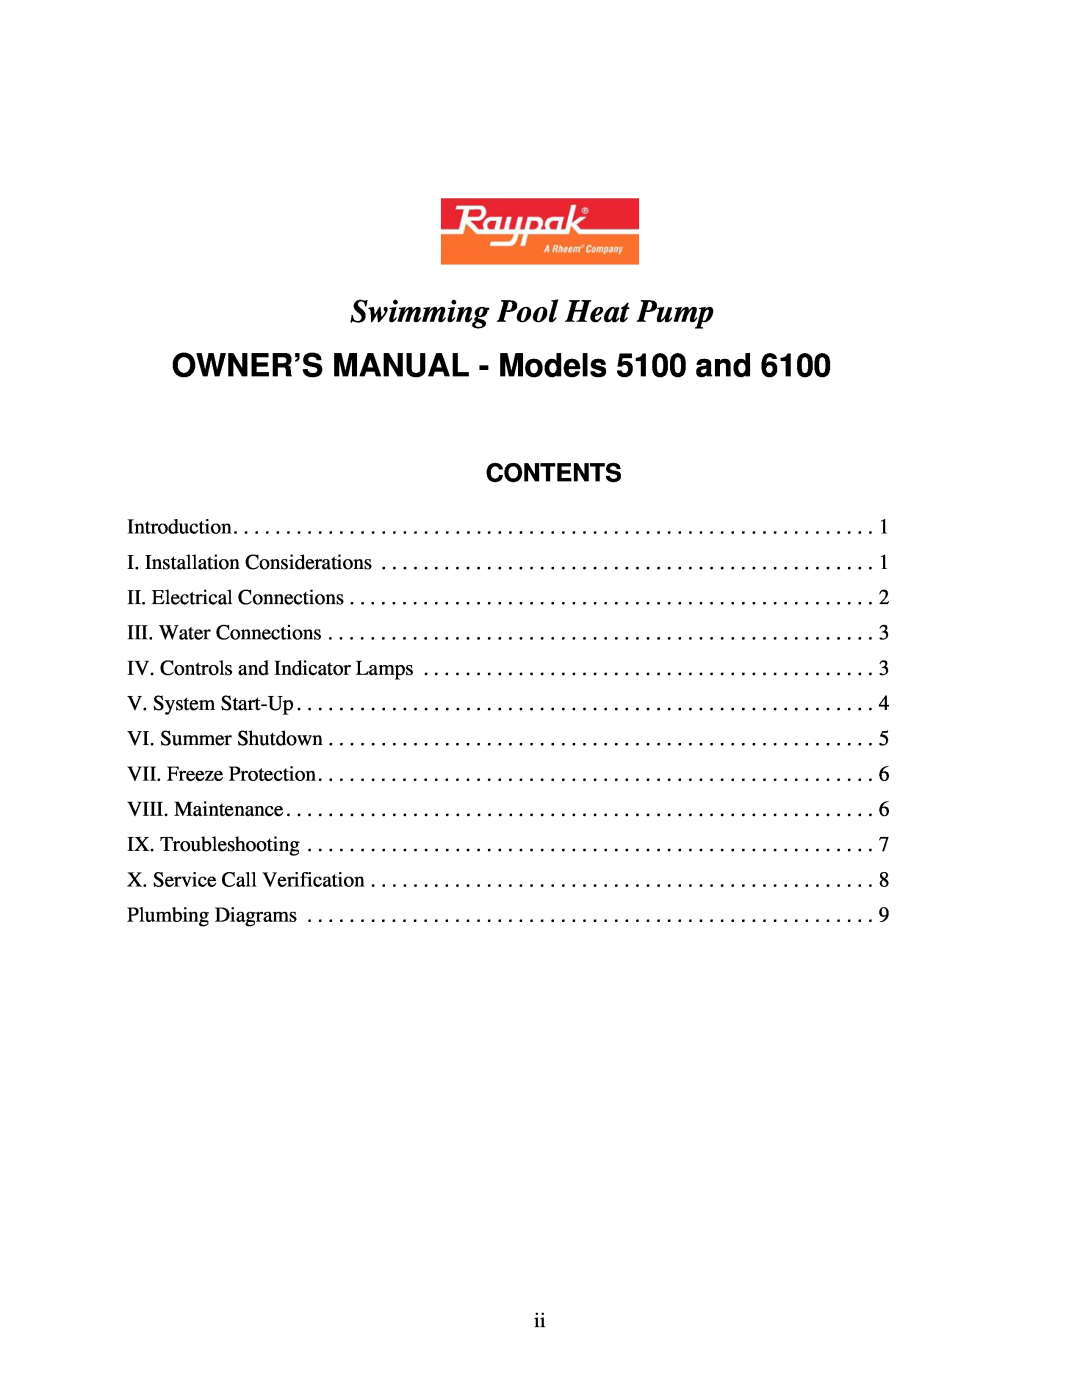 Raypak 5100, 6100 owner manual Swimming Pool Heat Pump, Contents 